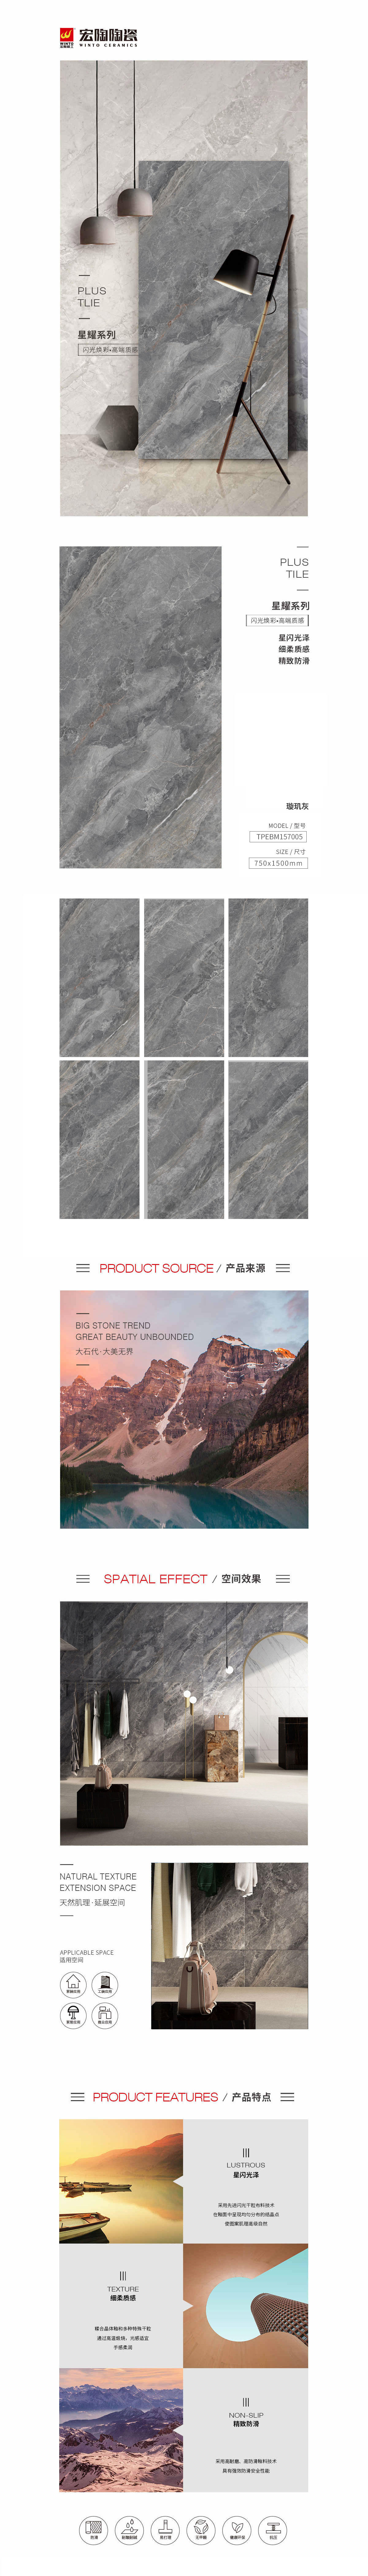 TPEBM157005璇玑灰陶瓷大板详细介绍了陶瓷大板的图片、规格、特点等，是东莞瓷砖，是拉菲9陶瓷品牌-中国陶瓷一线品牌。